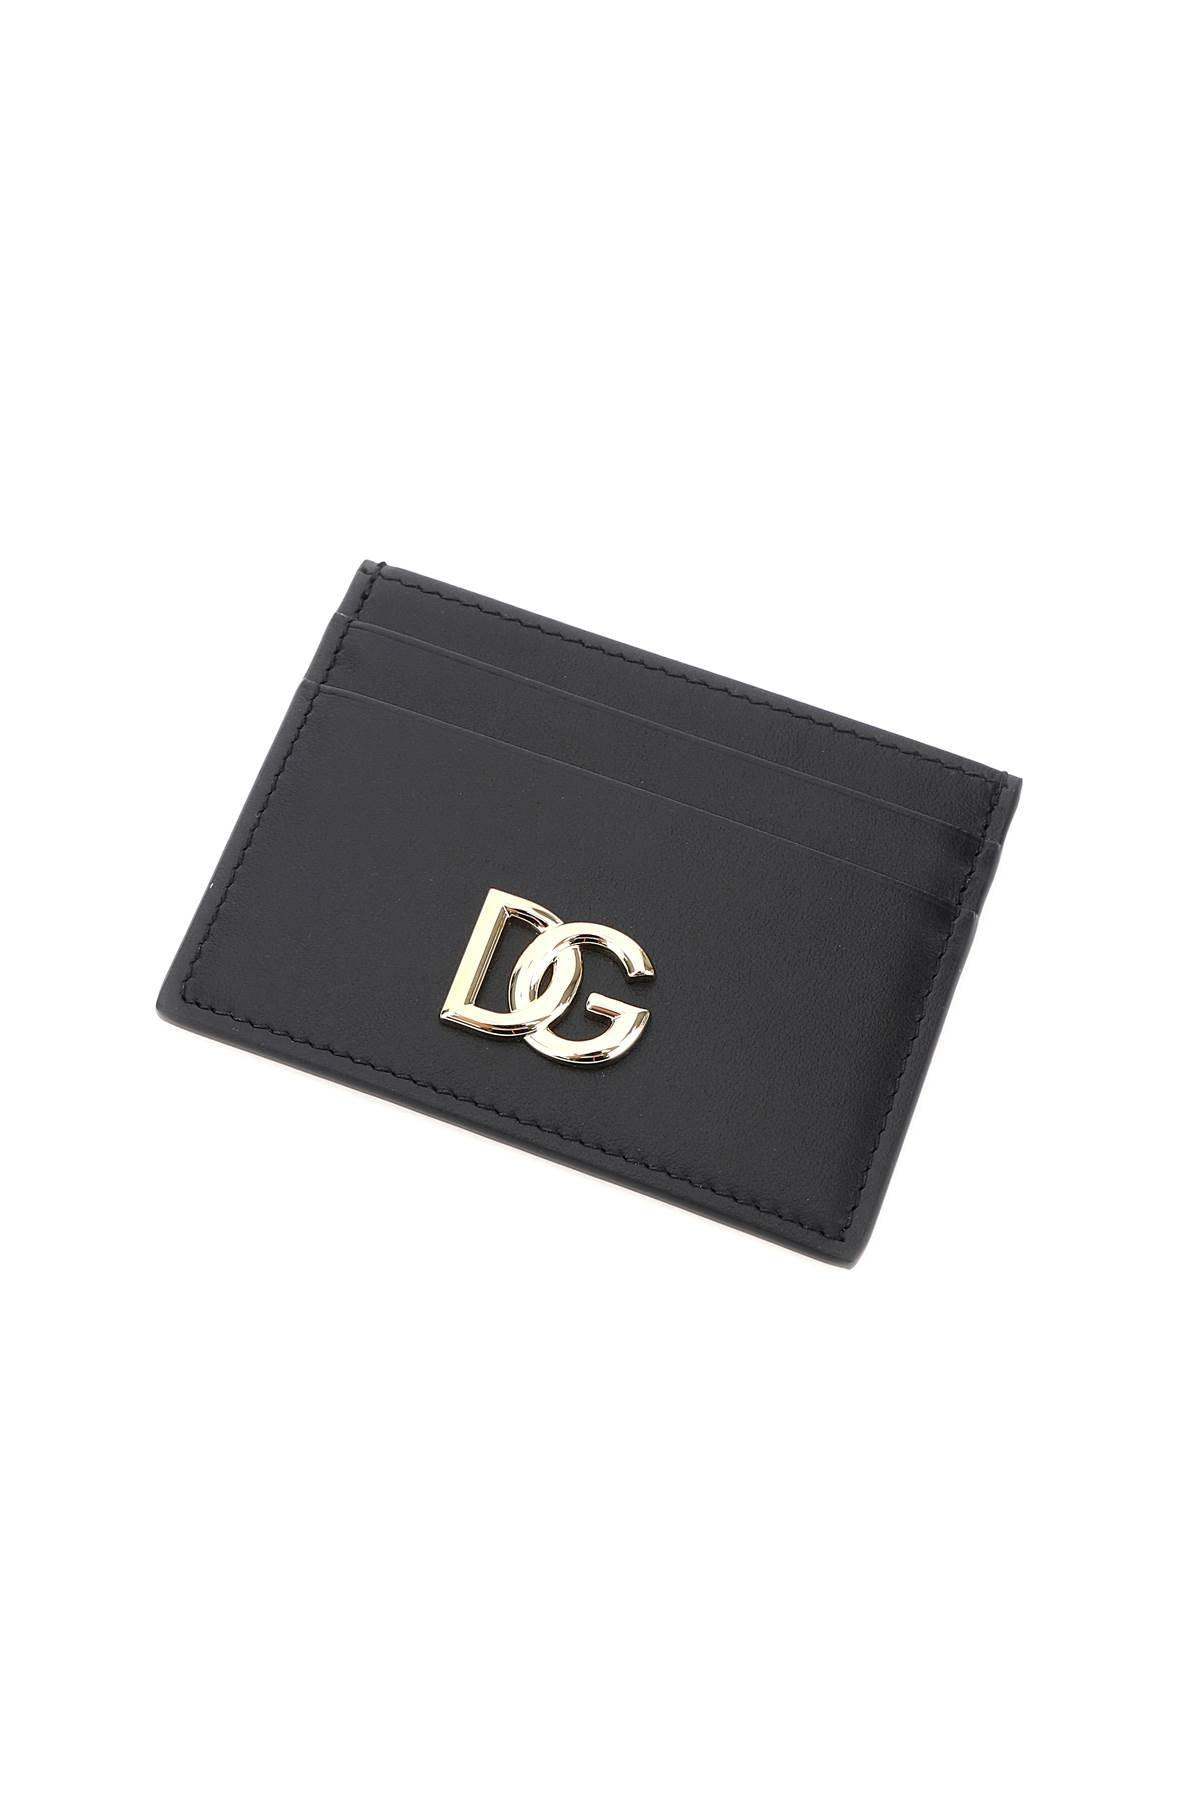 Dolce & Gabbana Dg Card Holder - JOHN JULIA